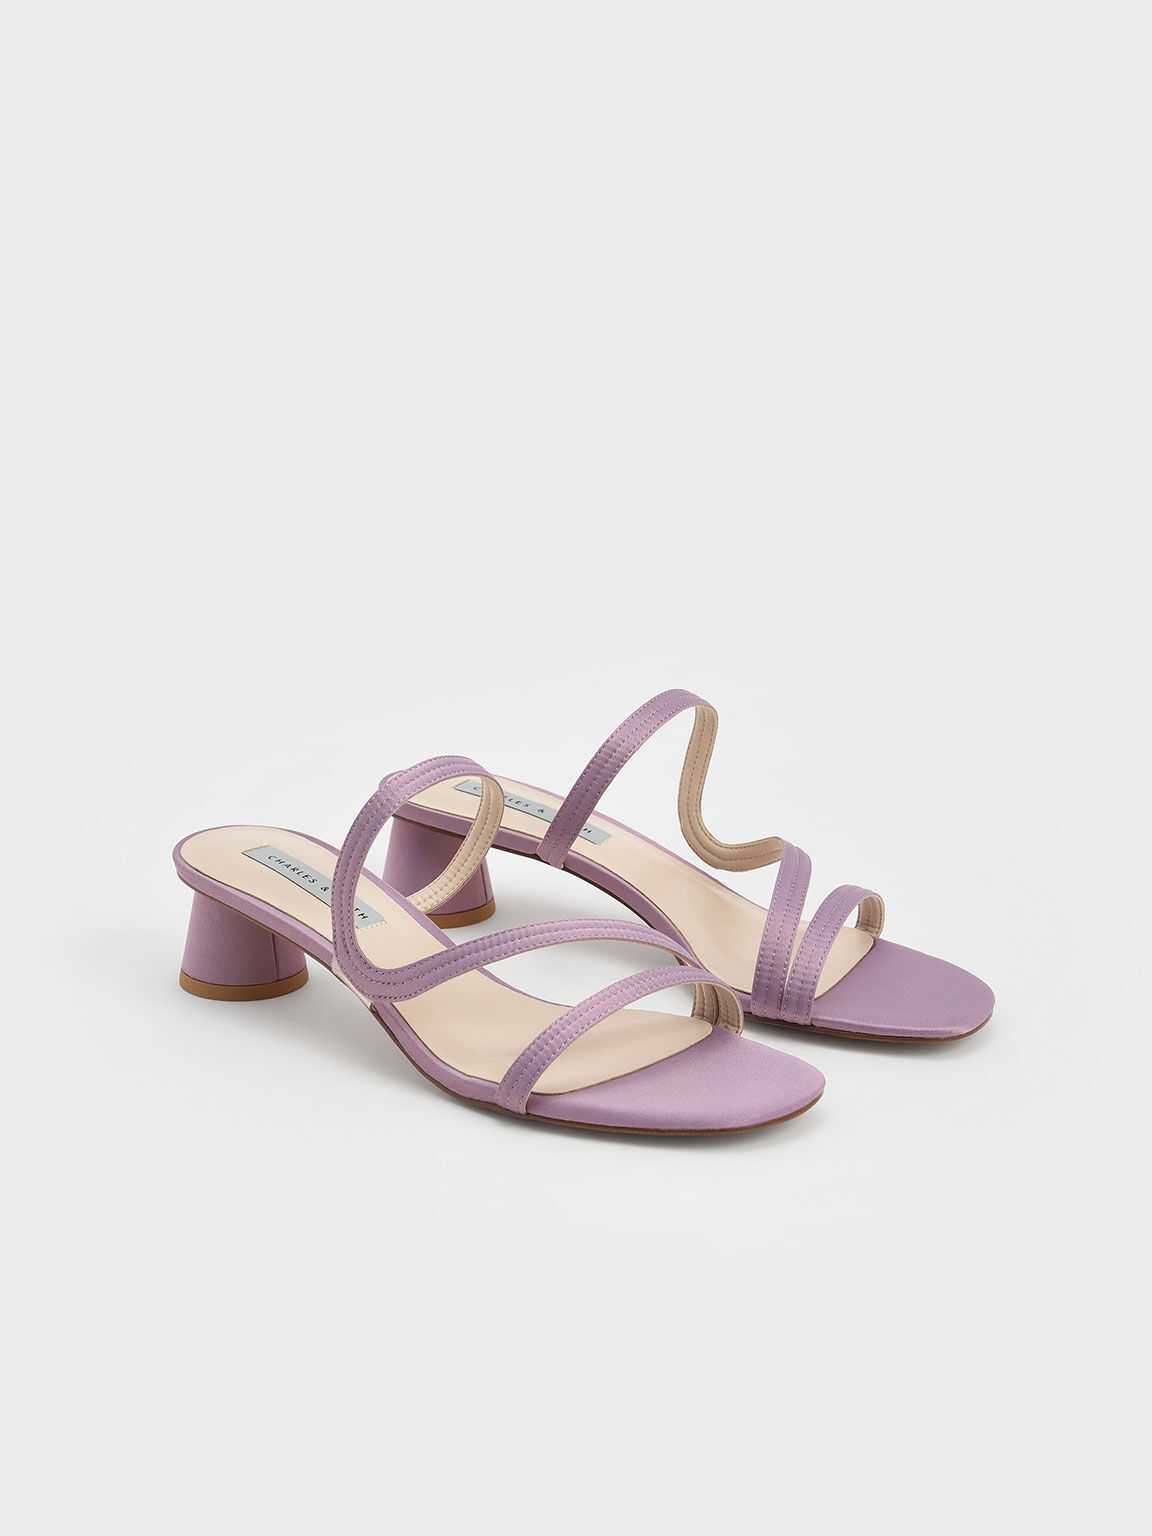 S型細帶拖鞋, 紫丁香色, hi-res